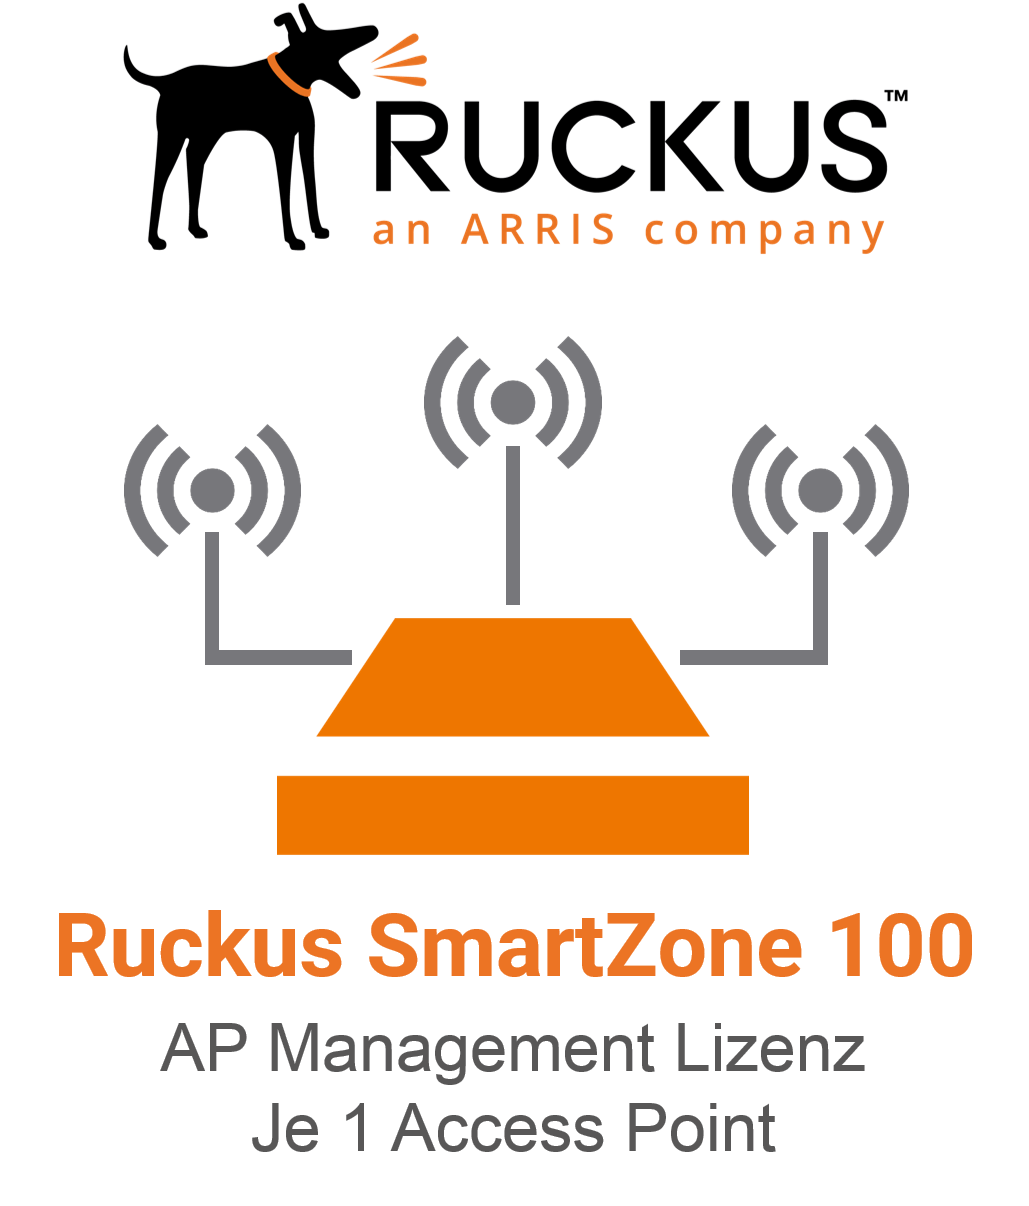 Ruckus Smartzone 100/144 AP Management Lizenz